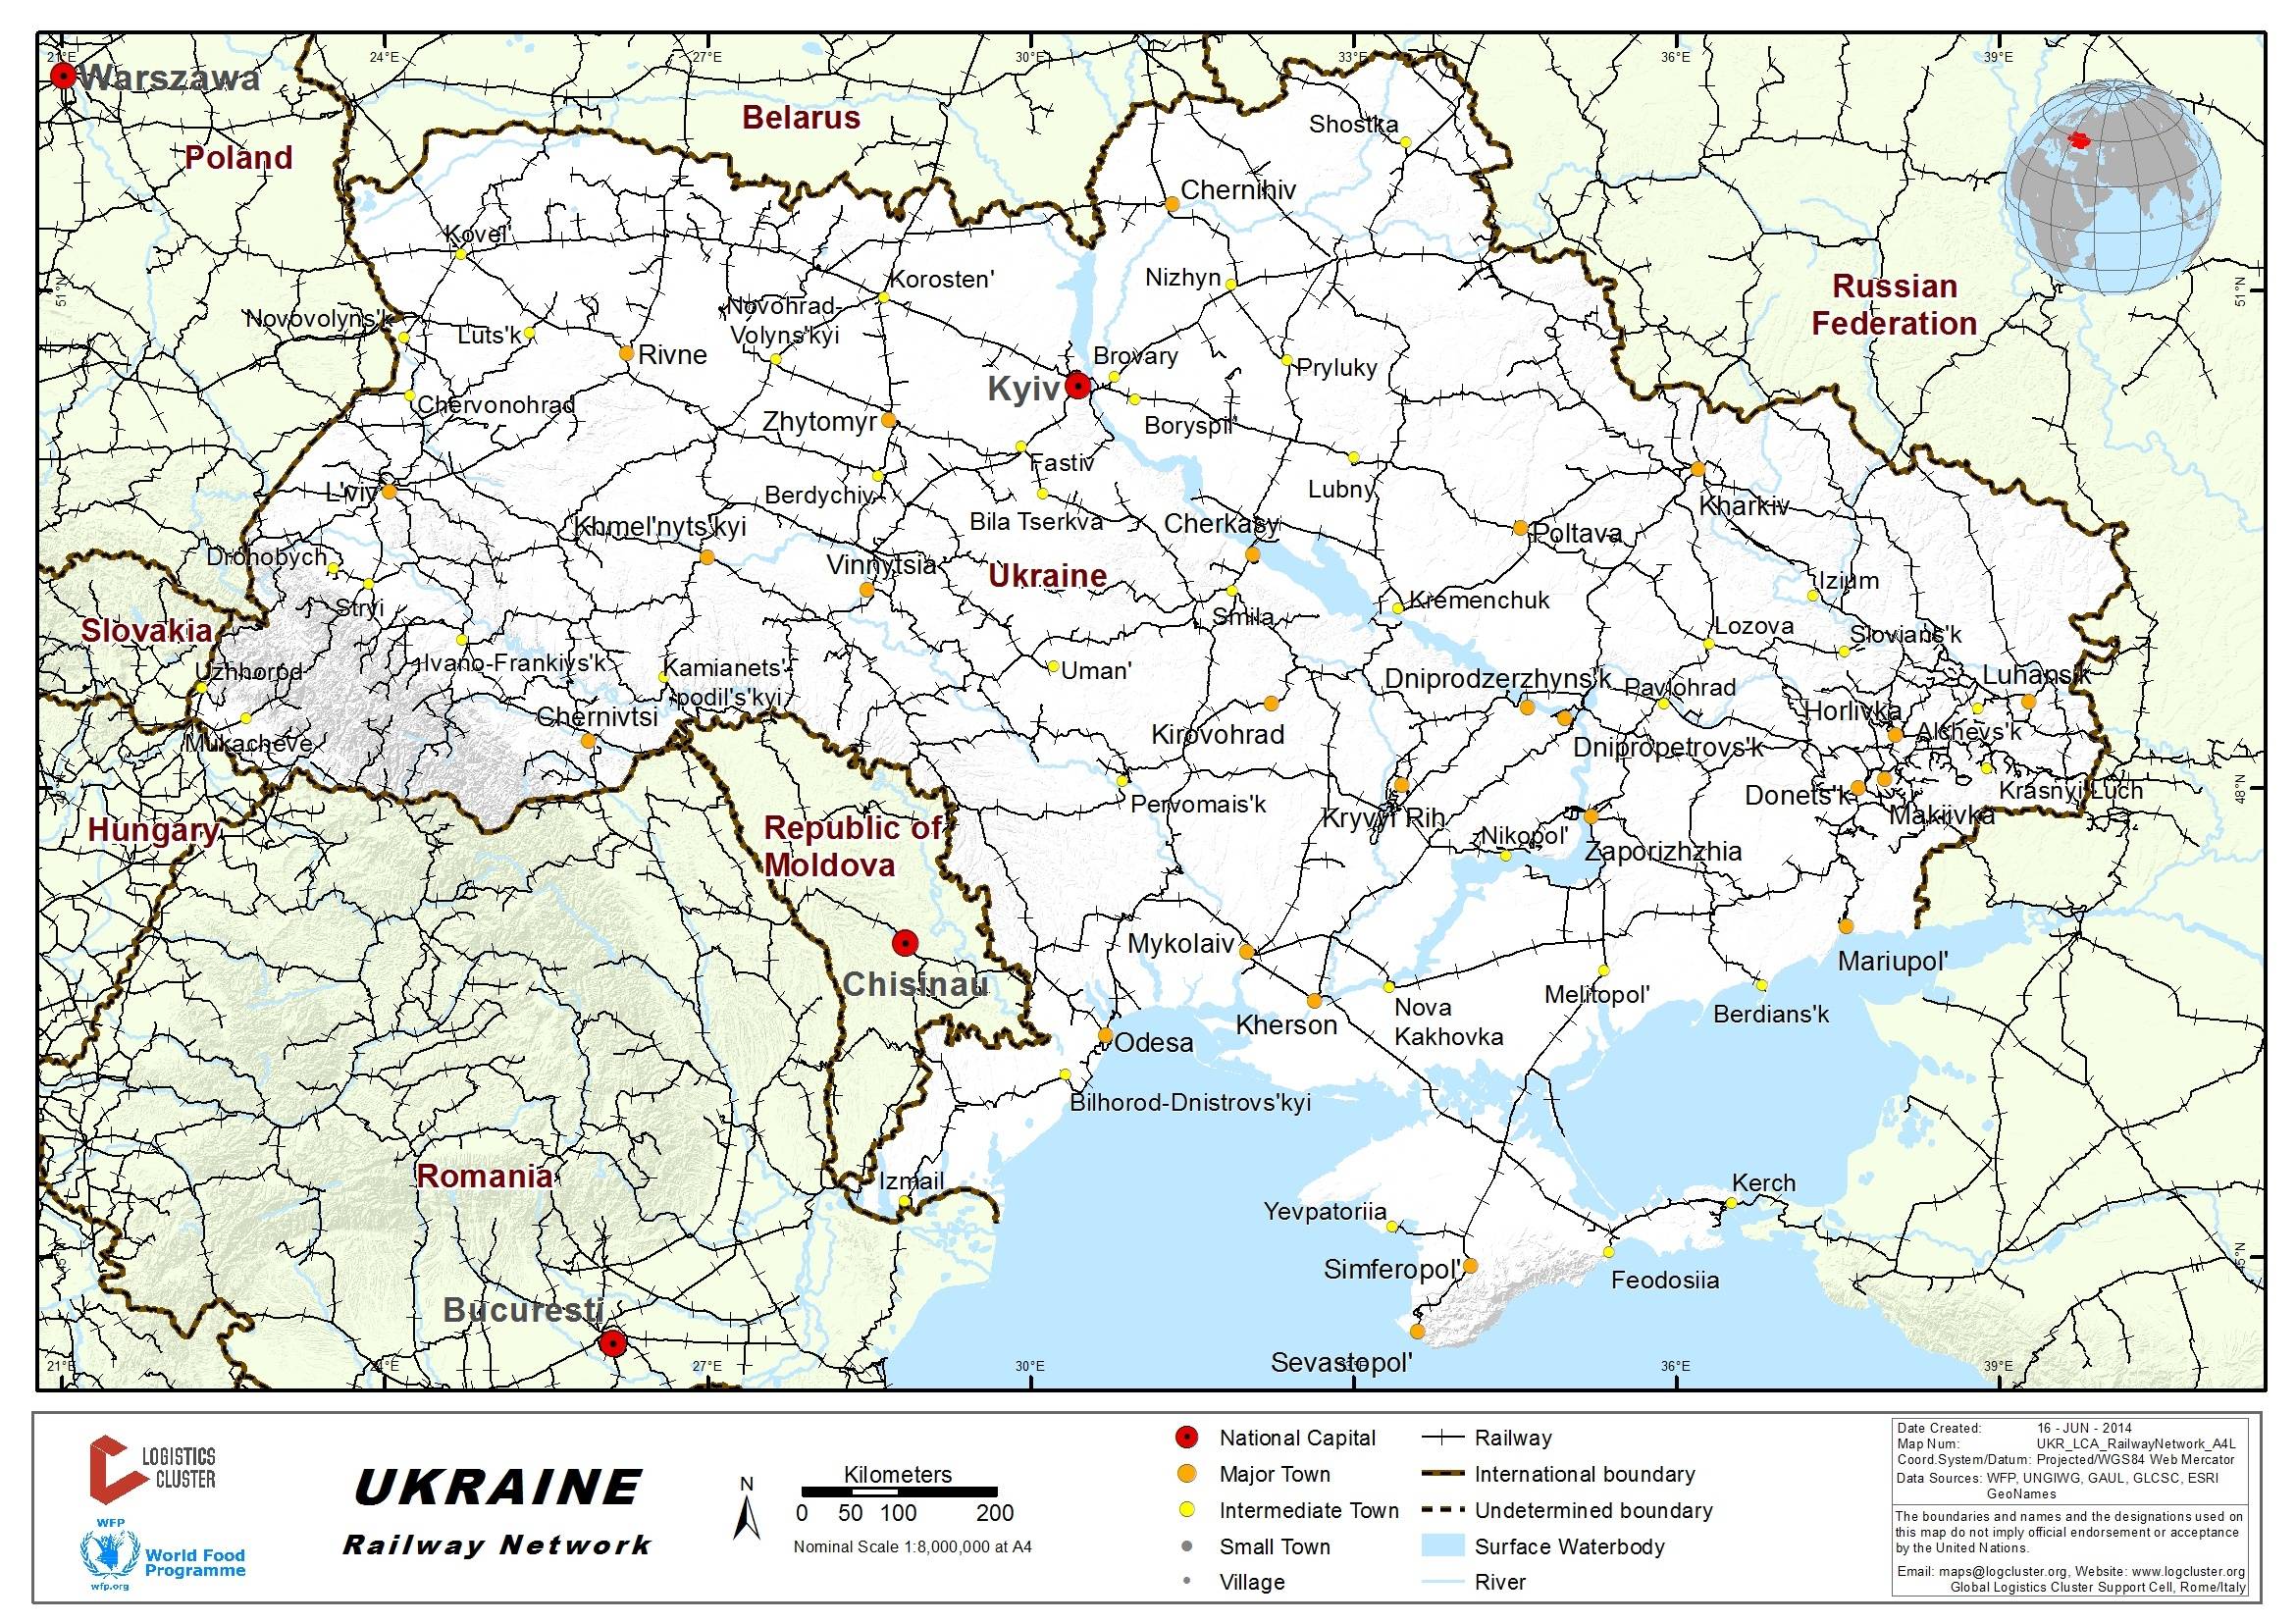 乌克兰民族分布图图片